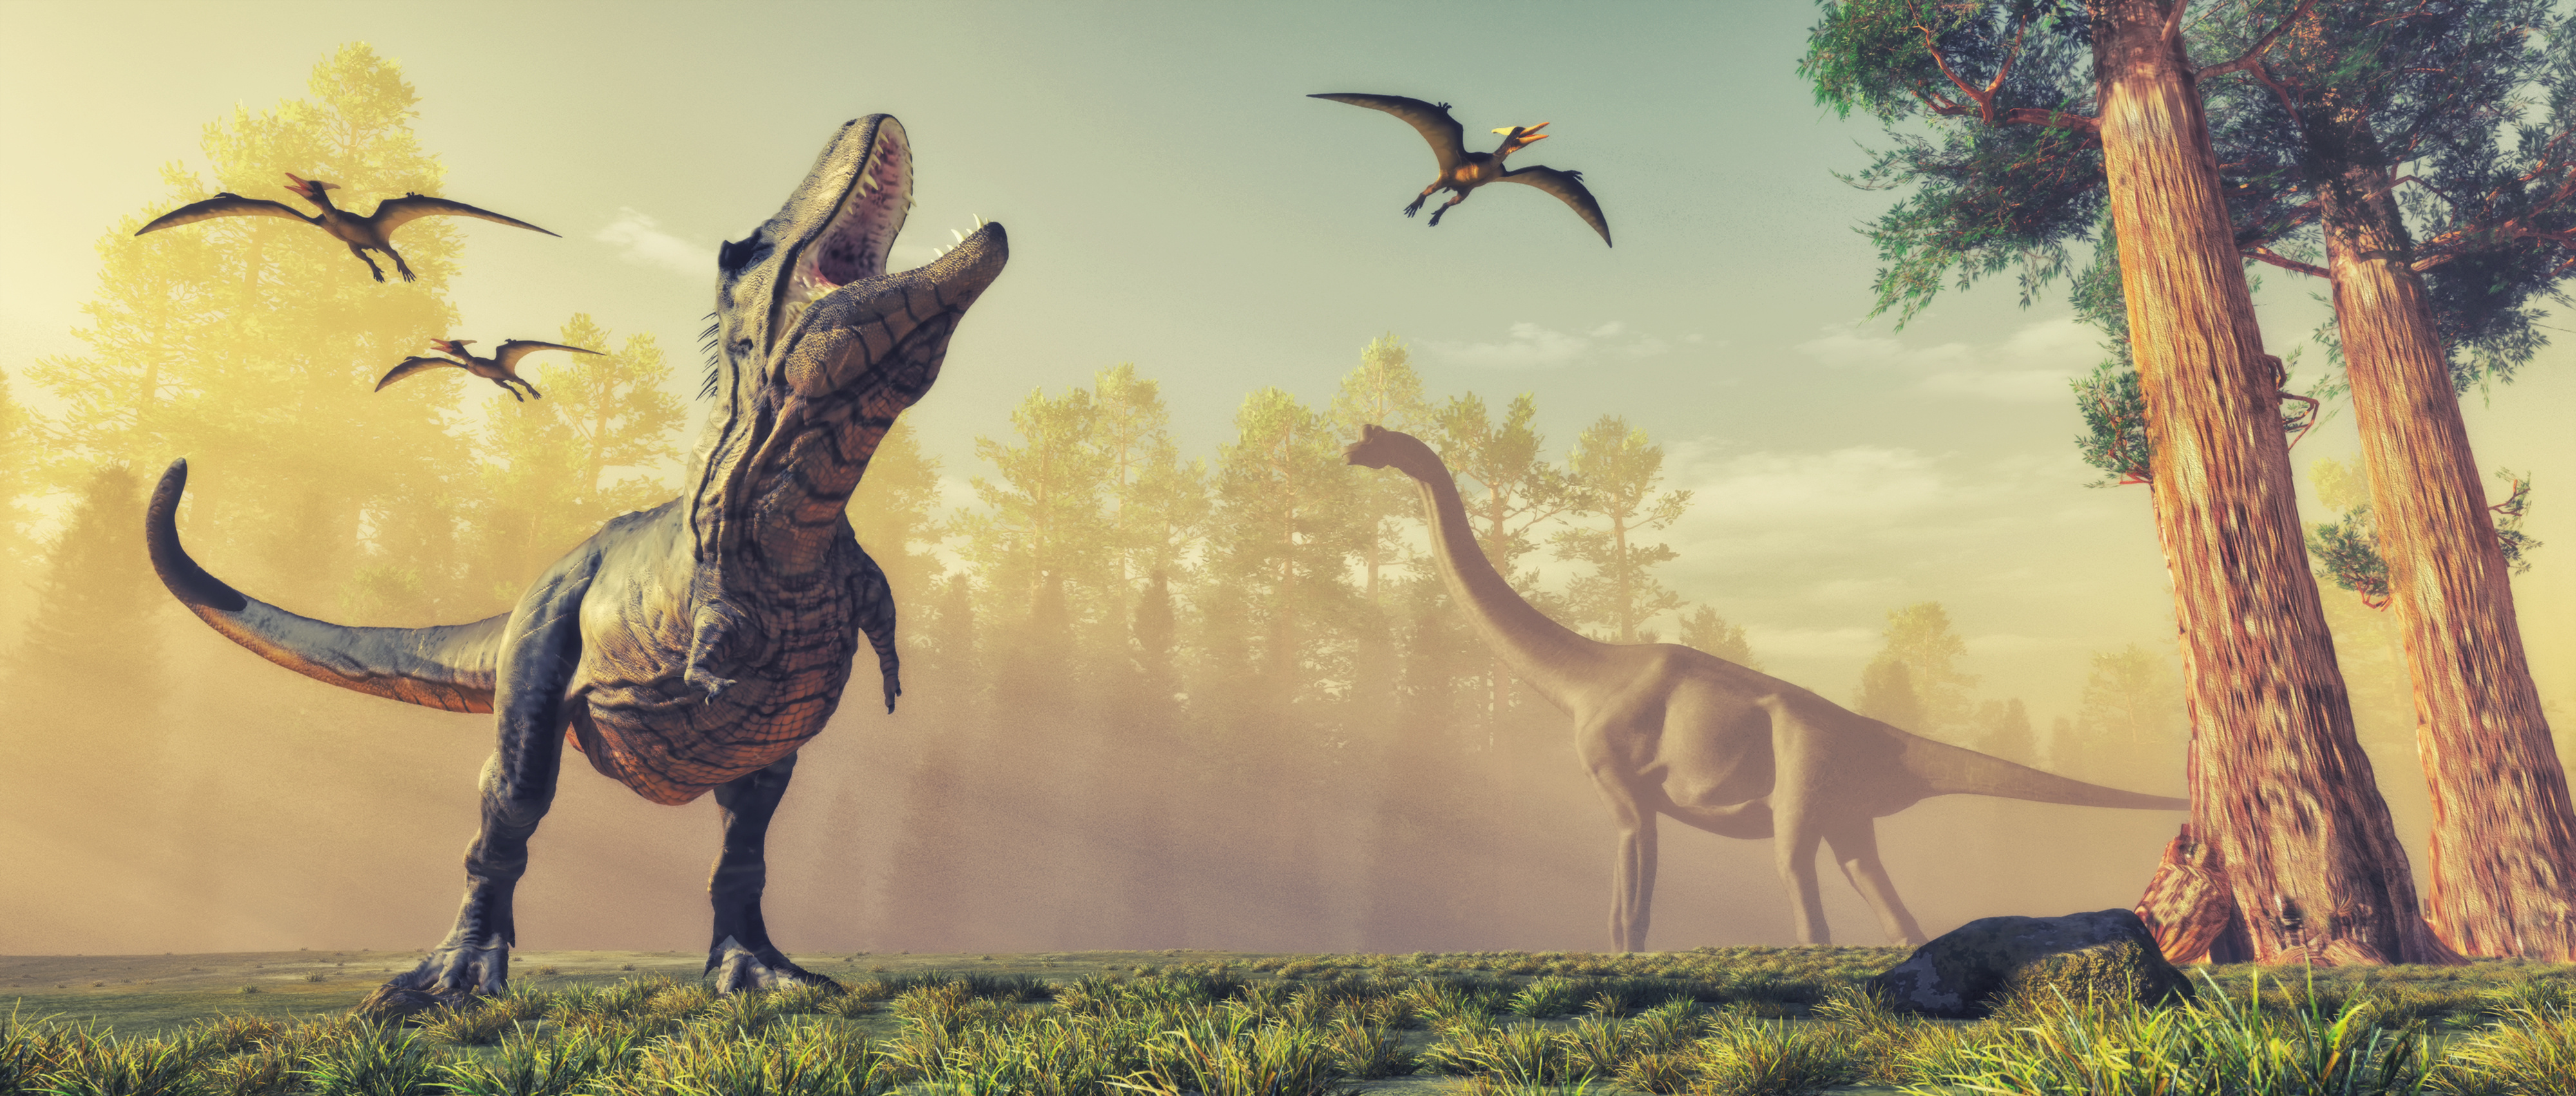 Les Tyrannosauridés étaient les prédateurs apex et ne laissaient que peu de place à leurs concurrents. © Orlando Florin Rosu, Adobe Stock